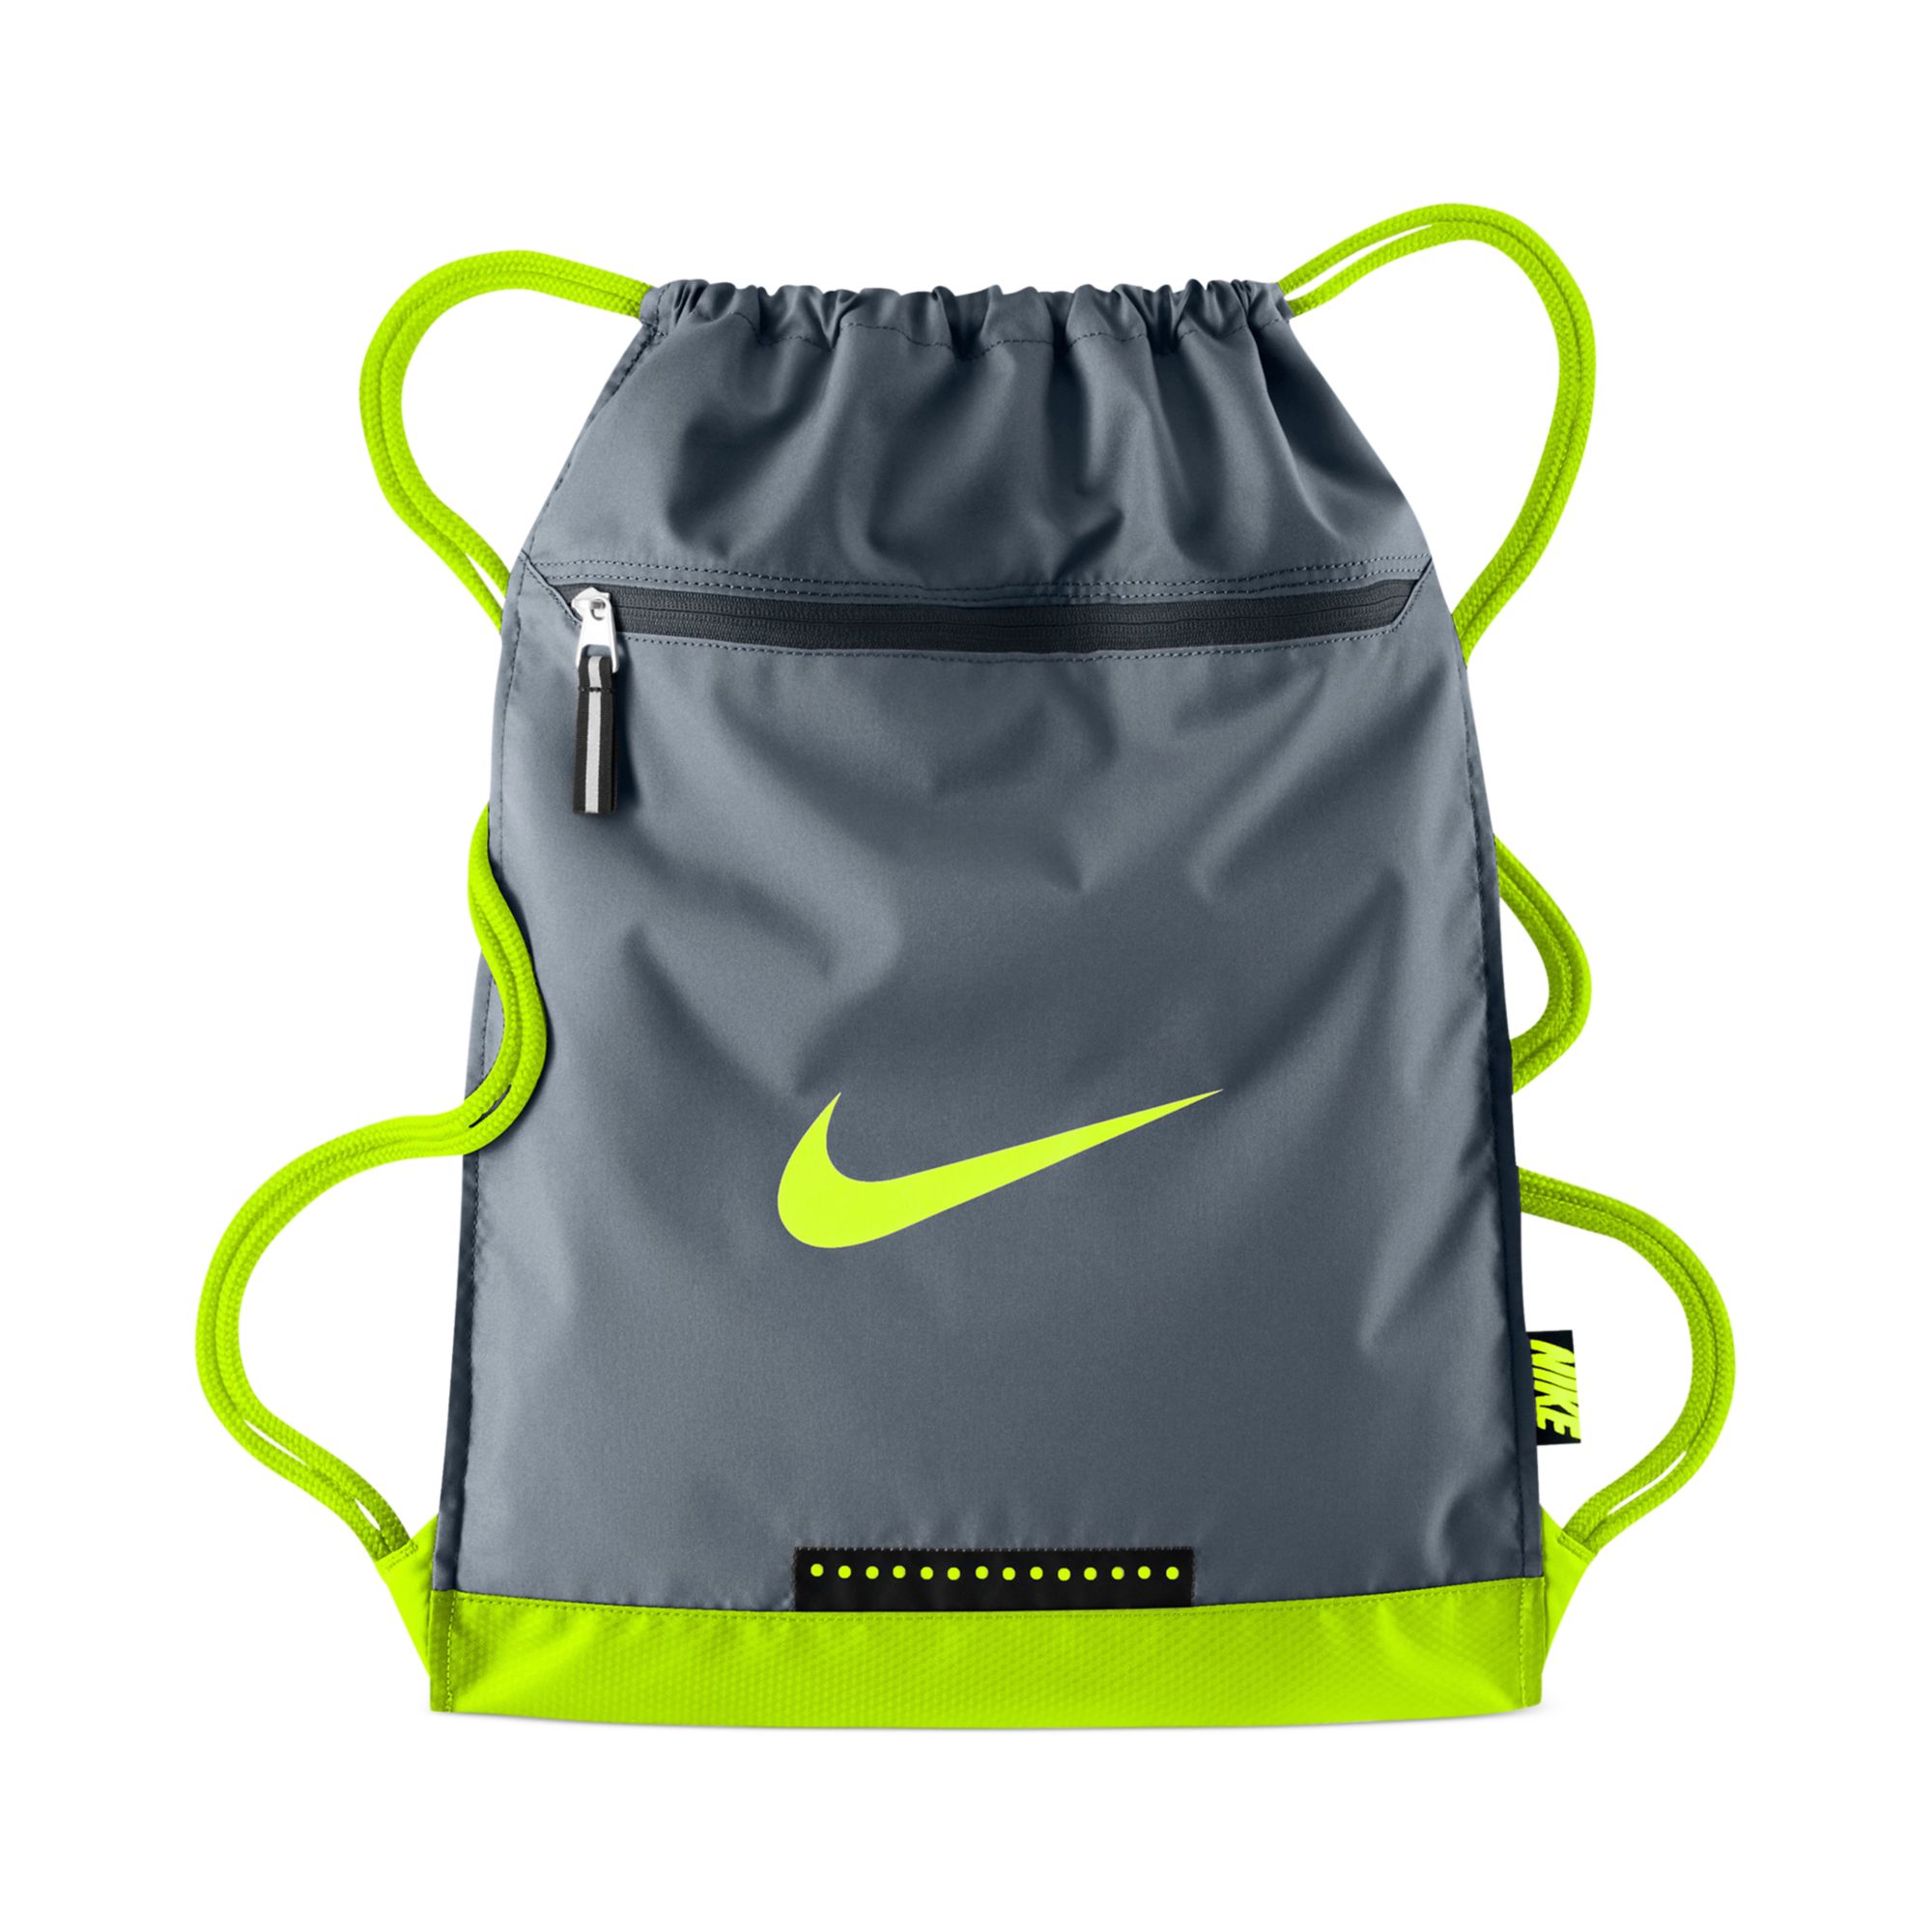 Lyst - Nike Team Training Gymsack Bag in Gray for Men